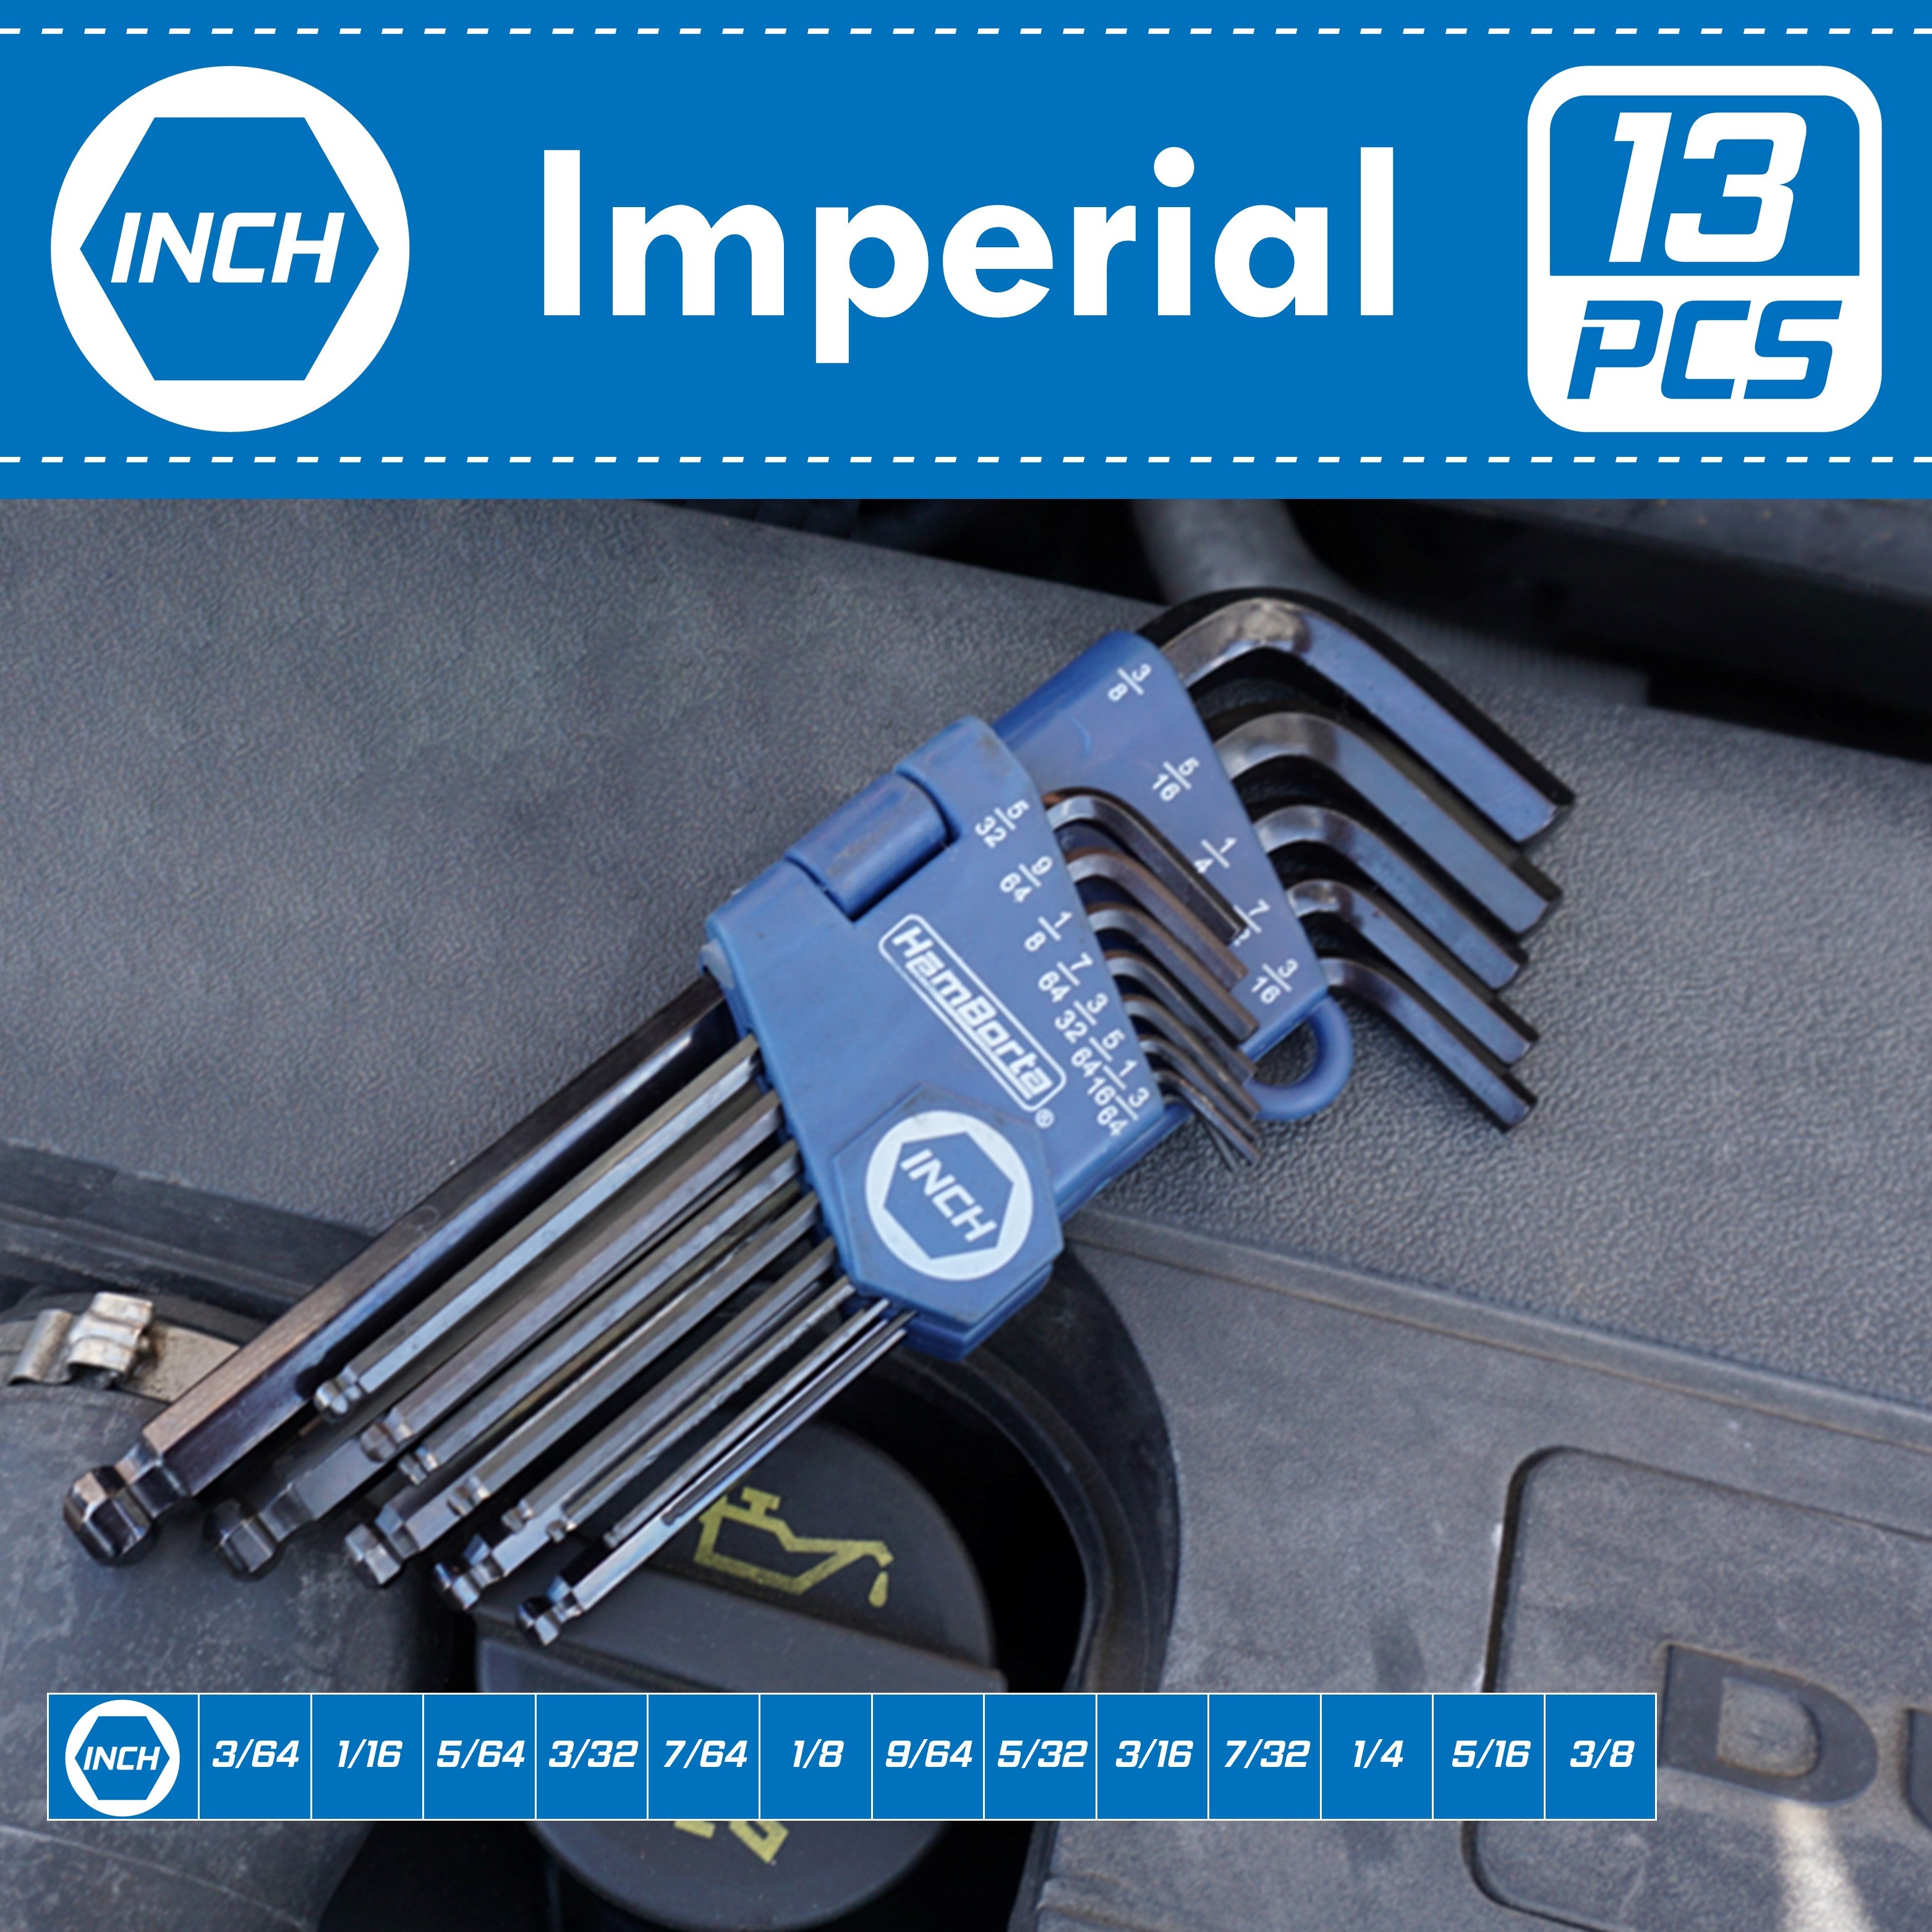 13 piece Imperial Allen Key Set from HemBorta